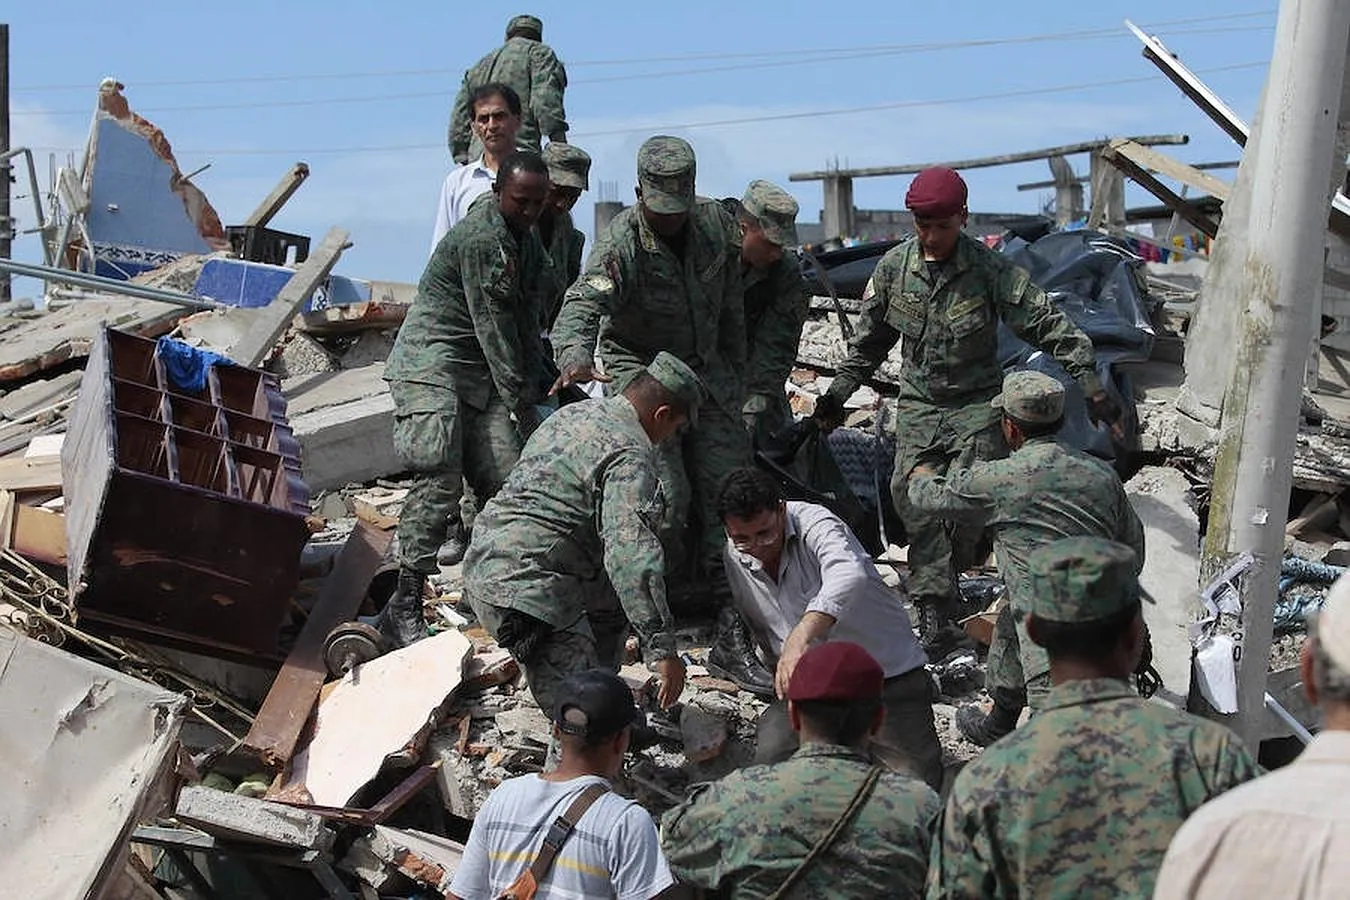 Autoridades y pobladores buscan sobrevivientes entre los escombros en la localidad de Pedernales (Ecuador),  después del terremoto de 7,8 grados en la escala de Richter registrado el sábado en la costa norte de Ecuador